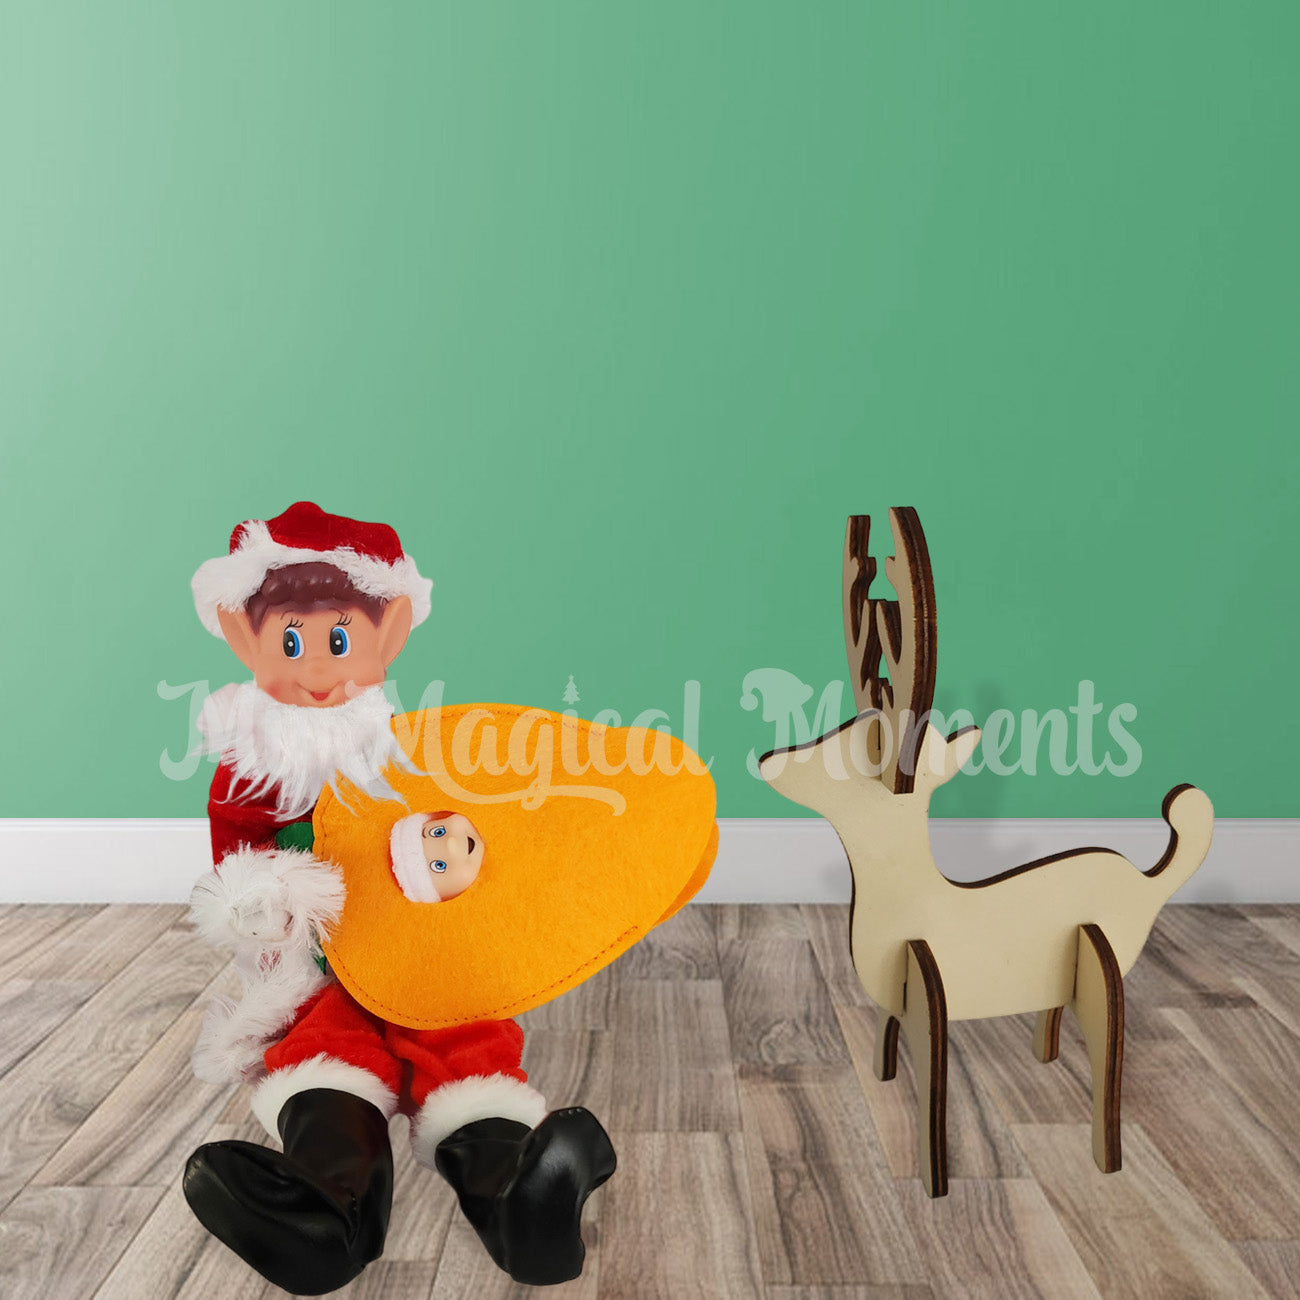 Santa Elf feeding Reindeer with baby elf carrot